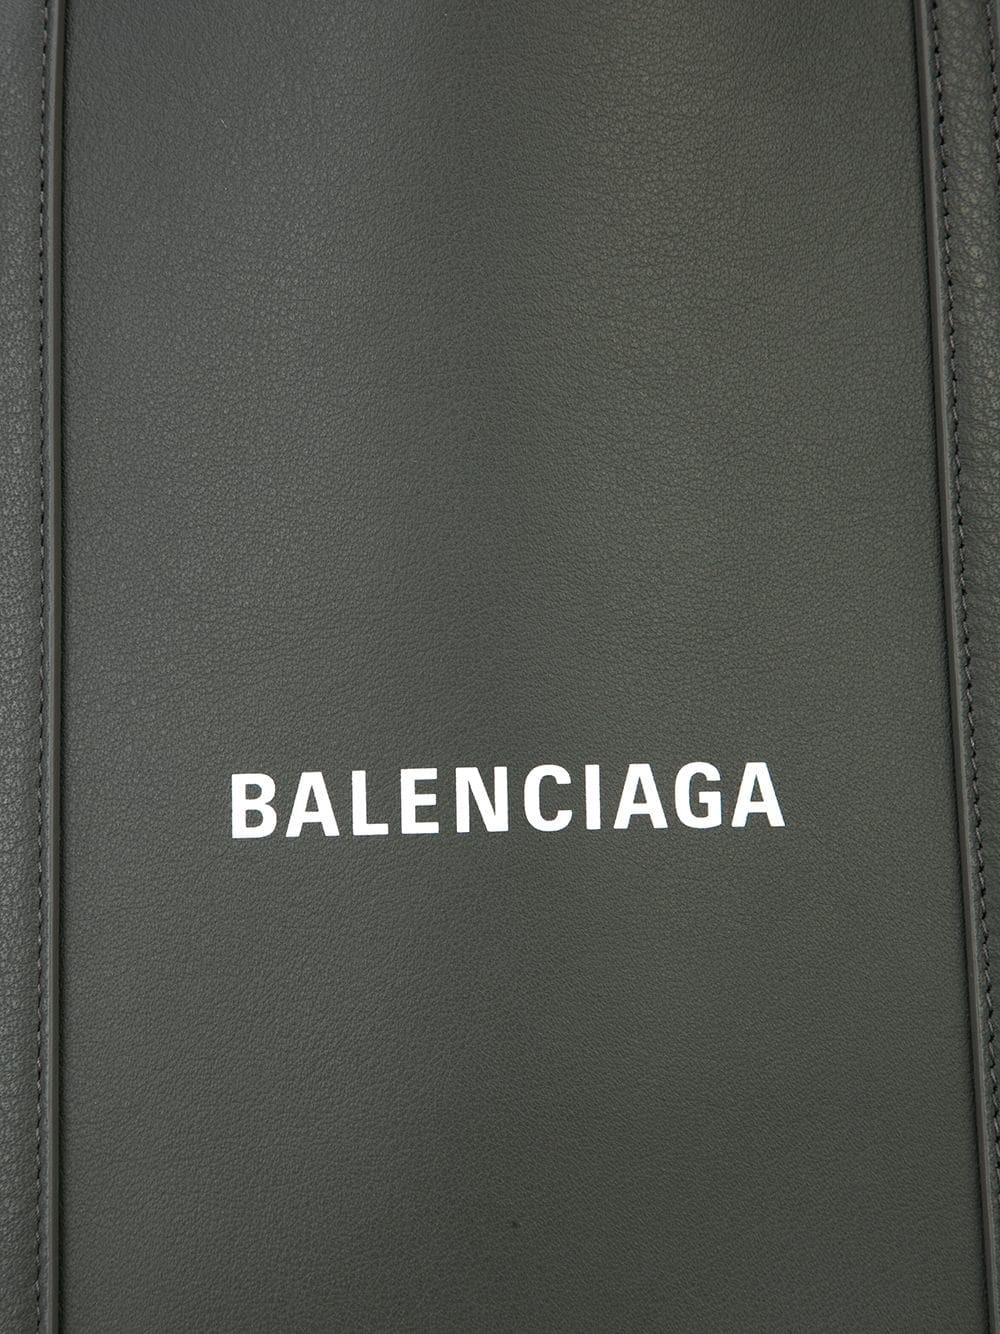 balenciaga DOUBLE LOGO BALTIMORE BAG available on montiboutique.com - 26755